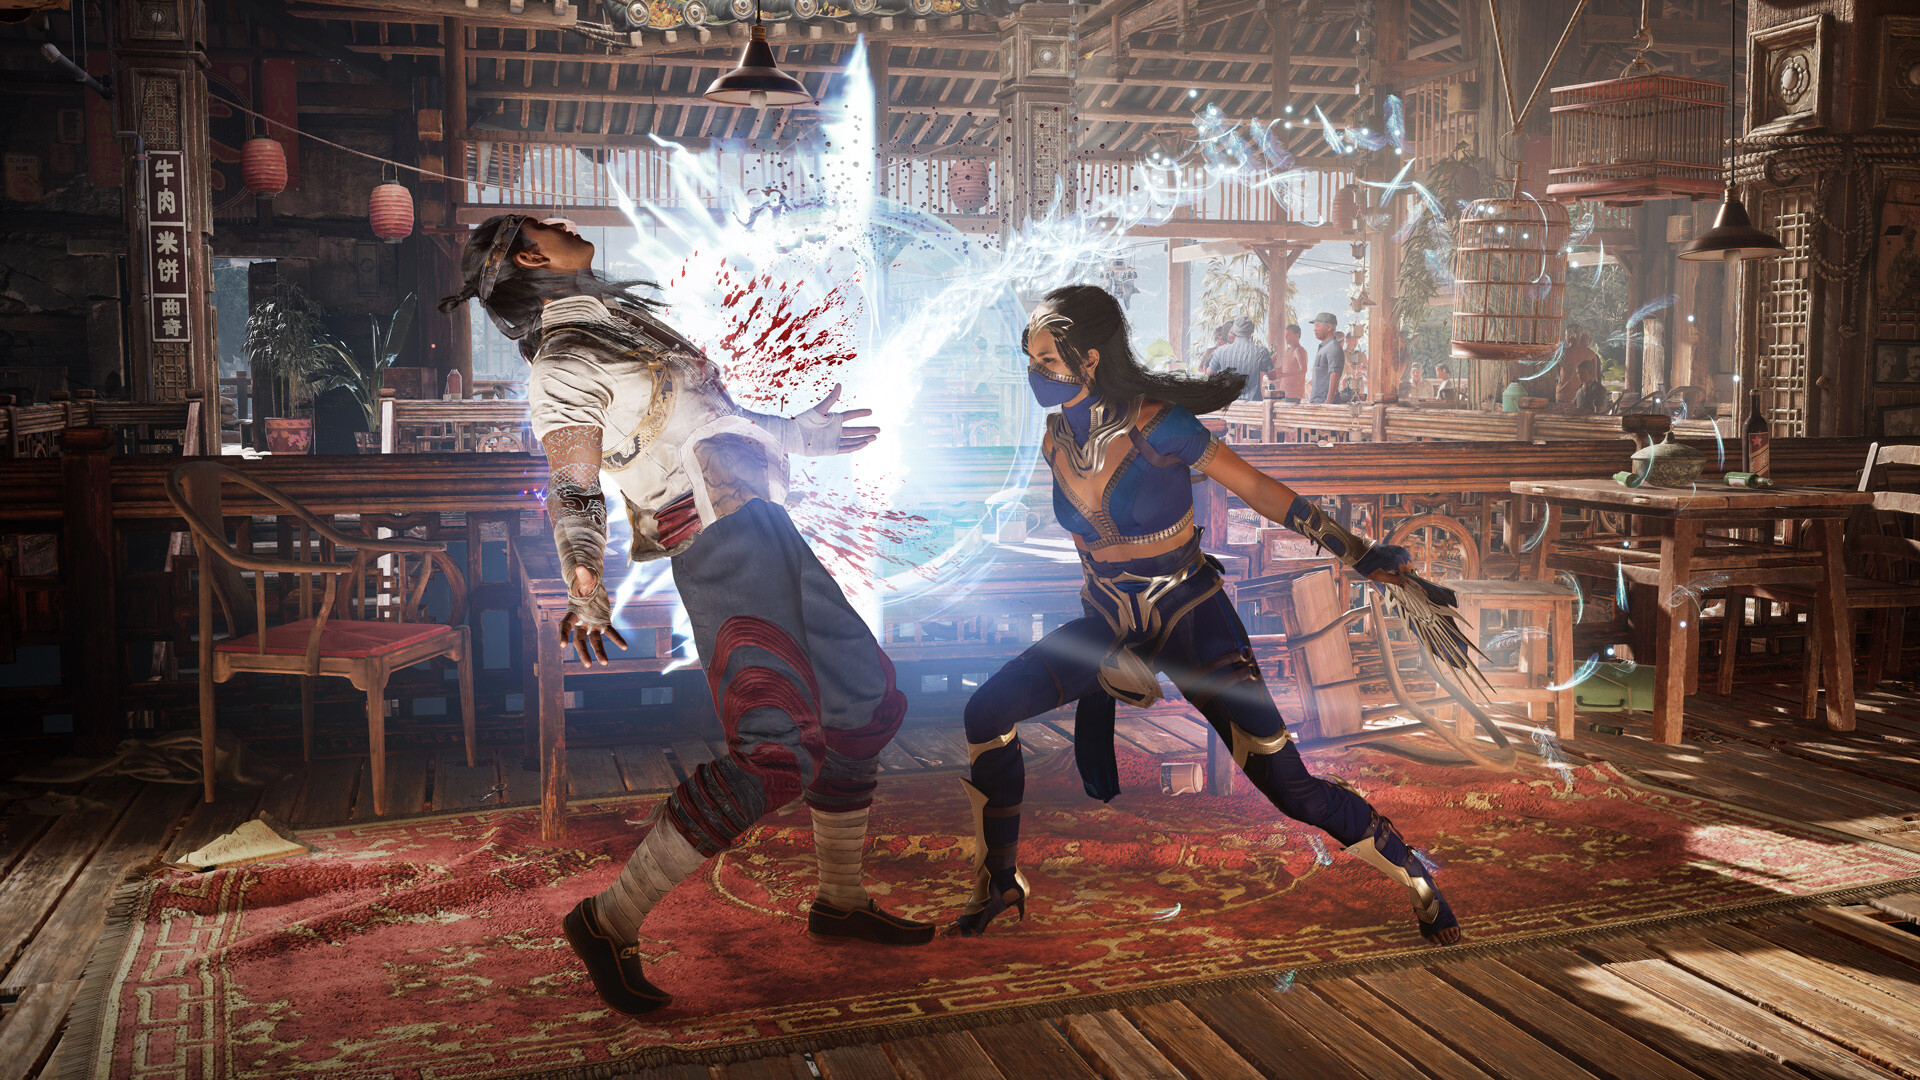 Hướng dẫn tải miễn phí game đối kháng bom tấn Mortal Kombat 1 mới nhất